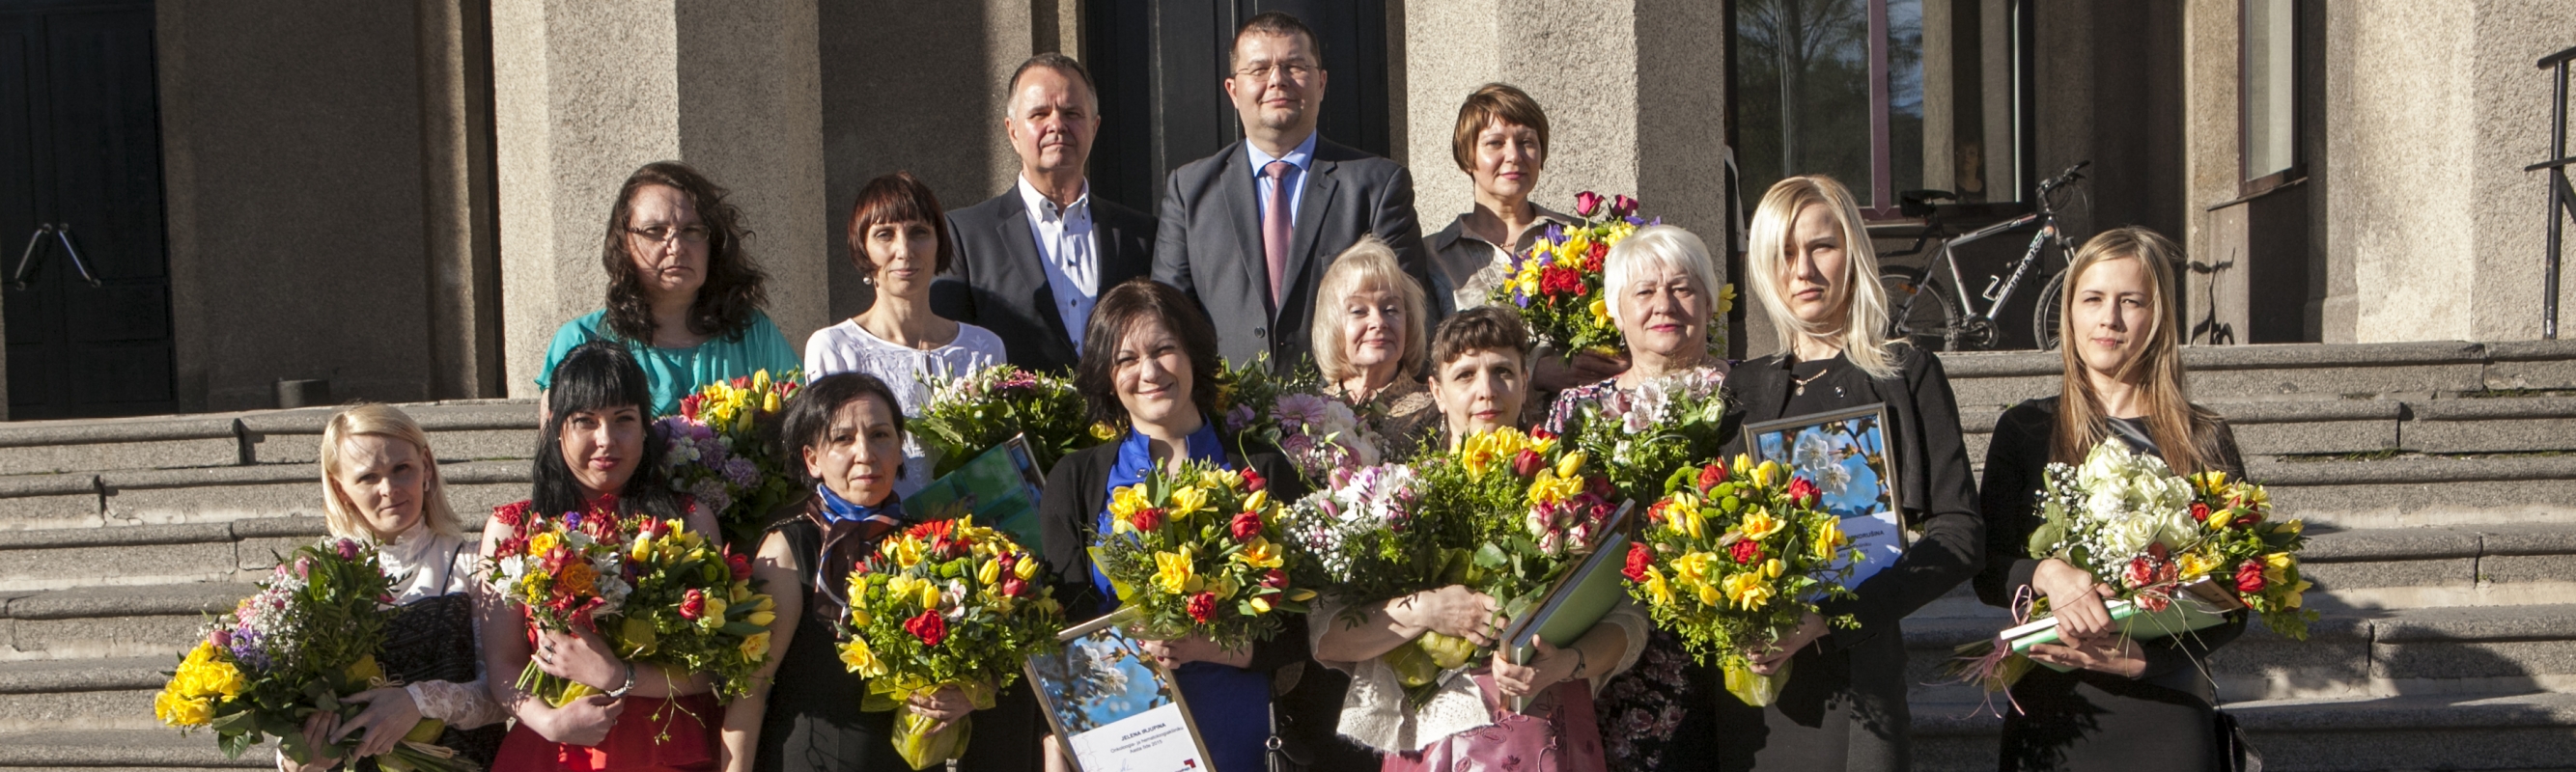 Põhja-Eesti Regionaalhaigla 2015. aasta parimad õed ja hooldajad koos haigla ülemarsti Andrus Remmelgase ja õendusdirektori Aleksei Gaidajenkoga.